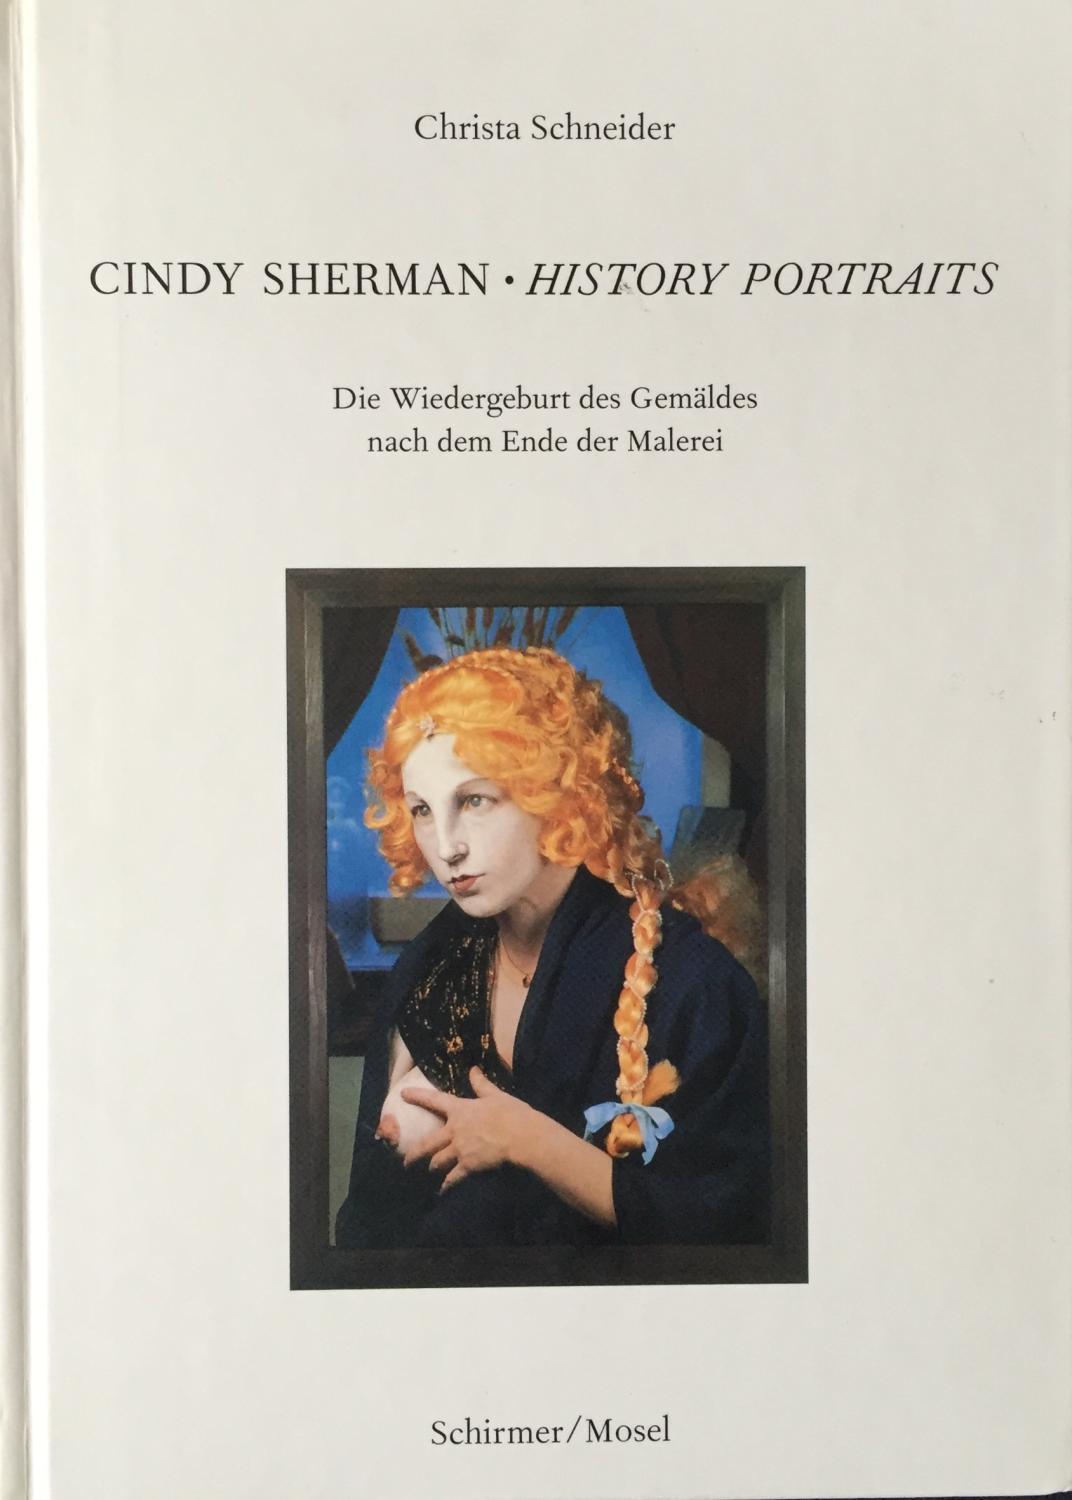 Sherman, Cindy. History Portraits. Die Wiedergeburt des Gemäldes nach dem Ende der Malerei. - Christa Schneider